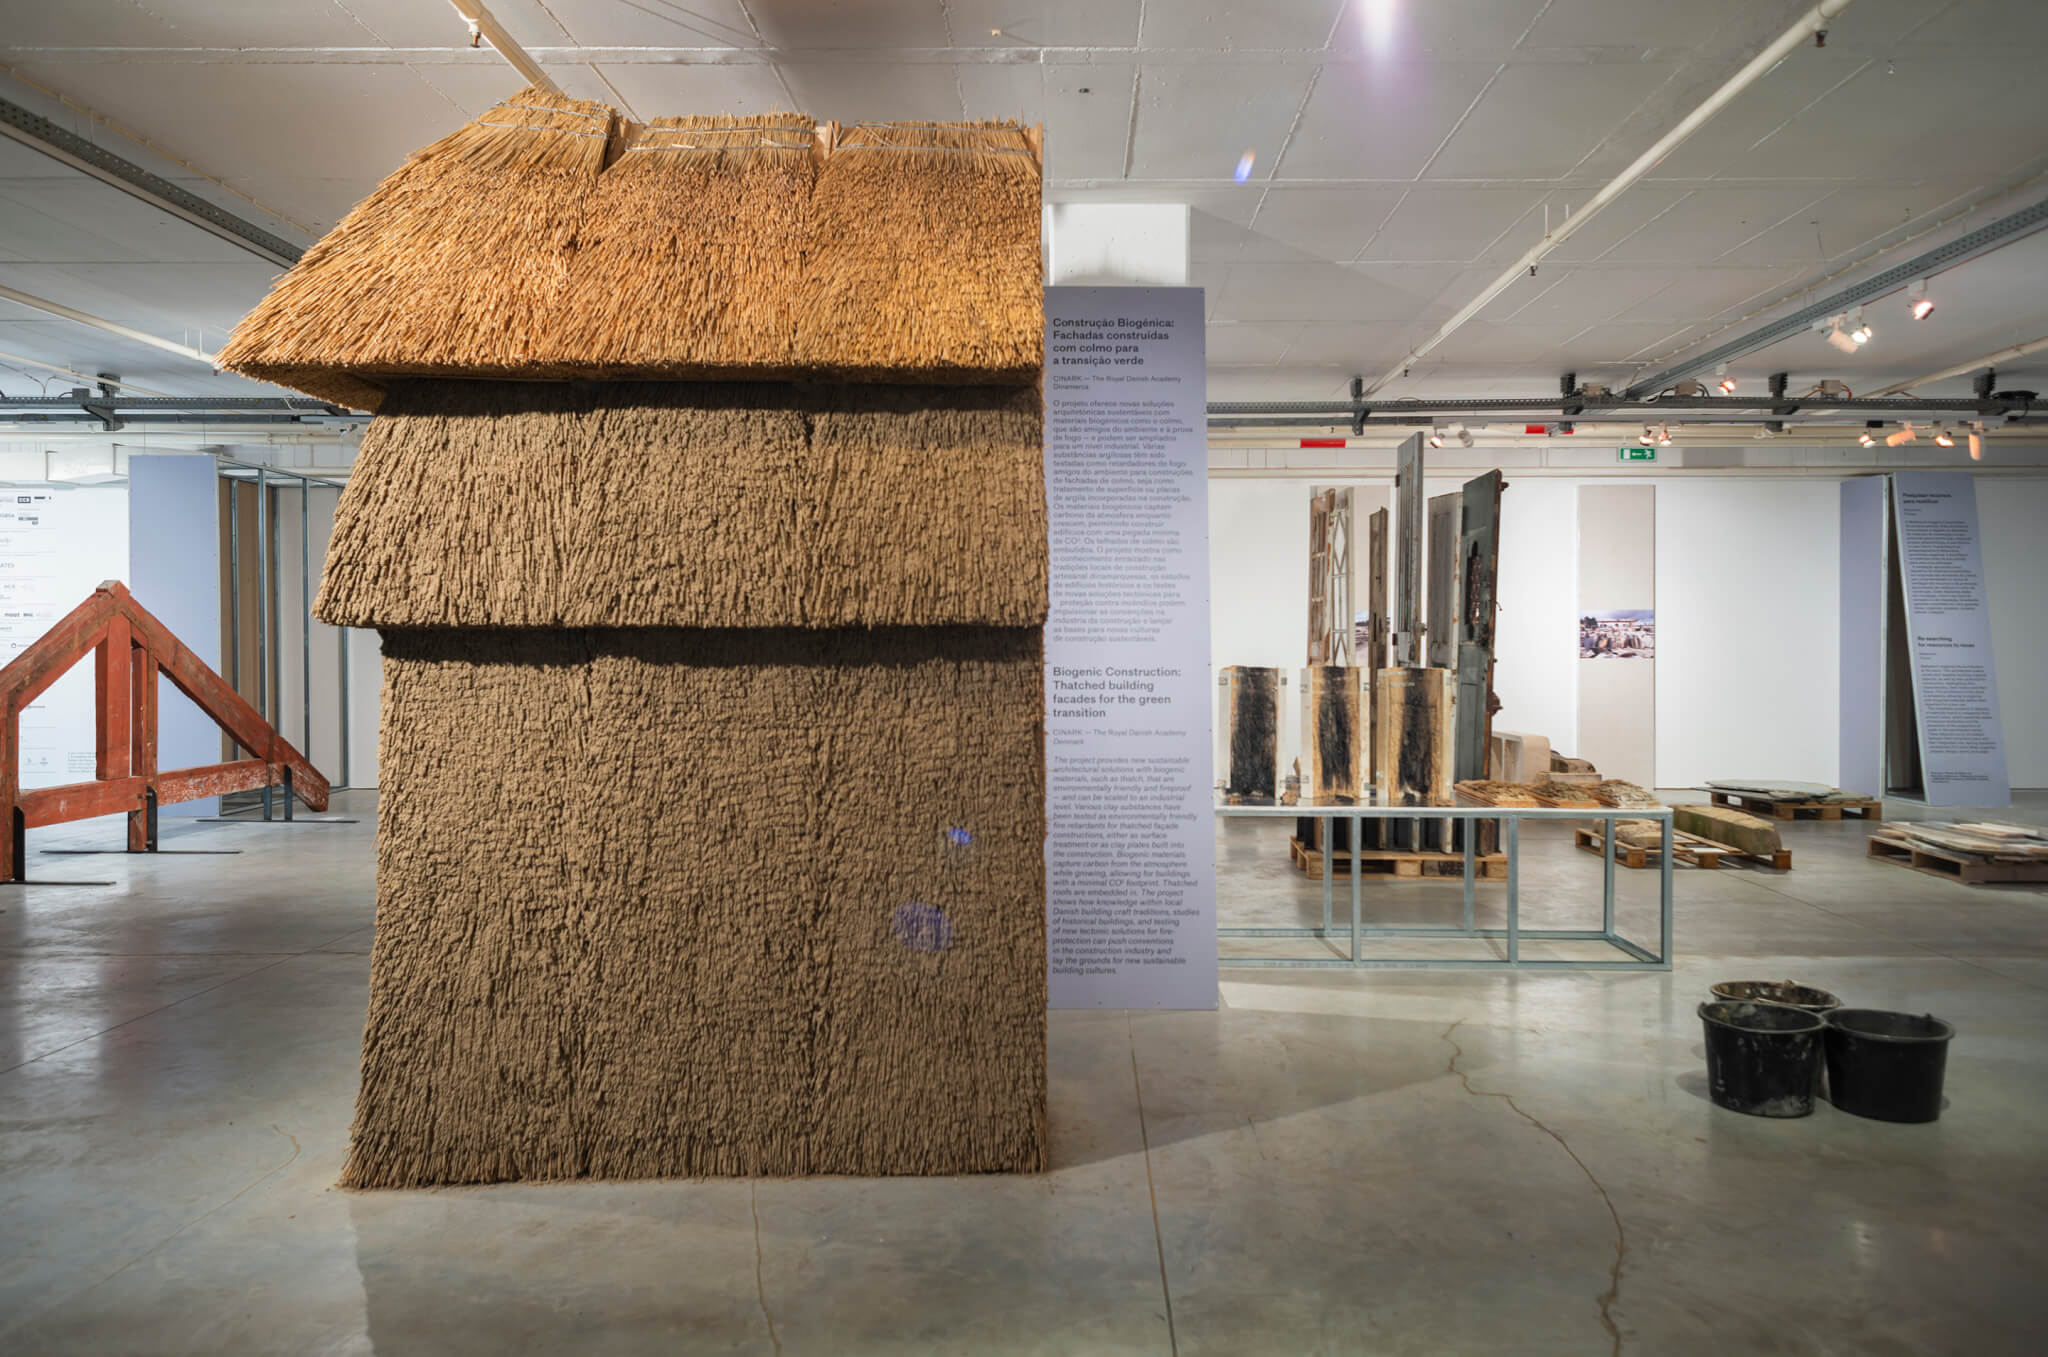 展览空间中展示的用土质材料建造的建筑模型